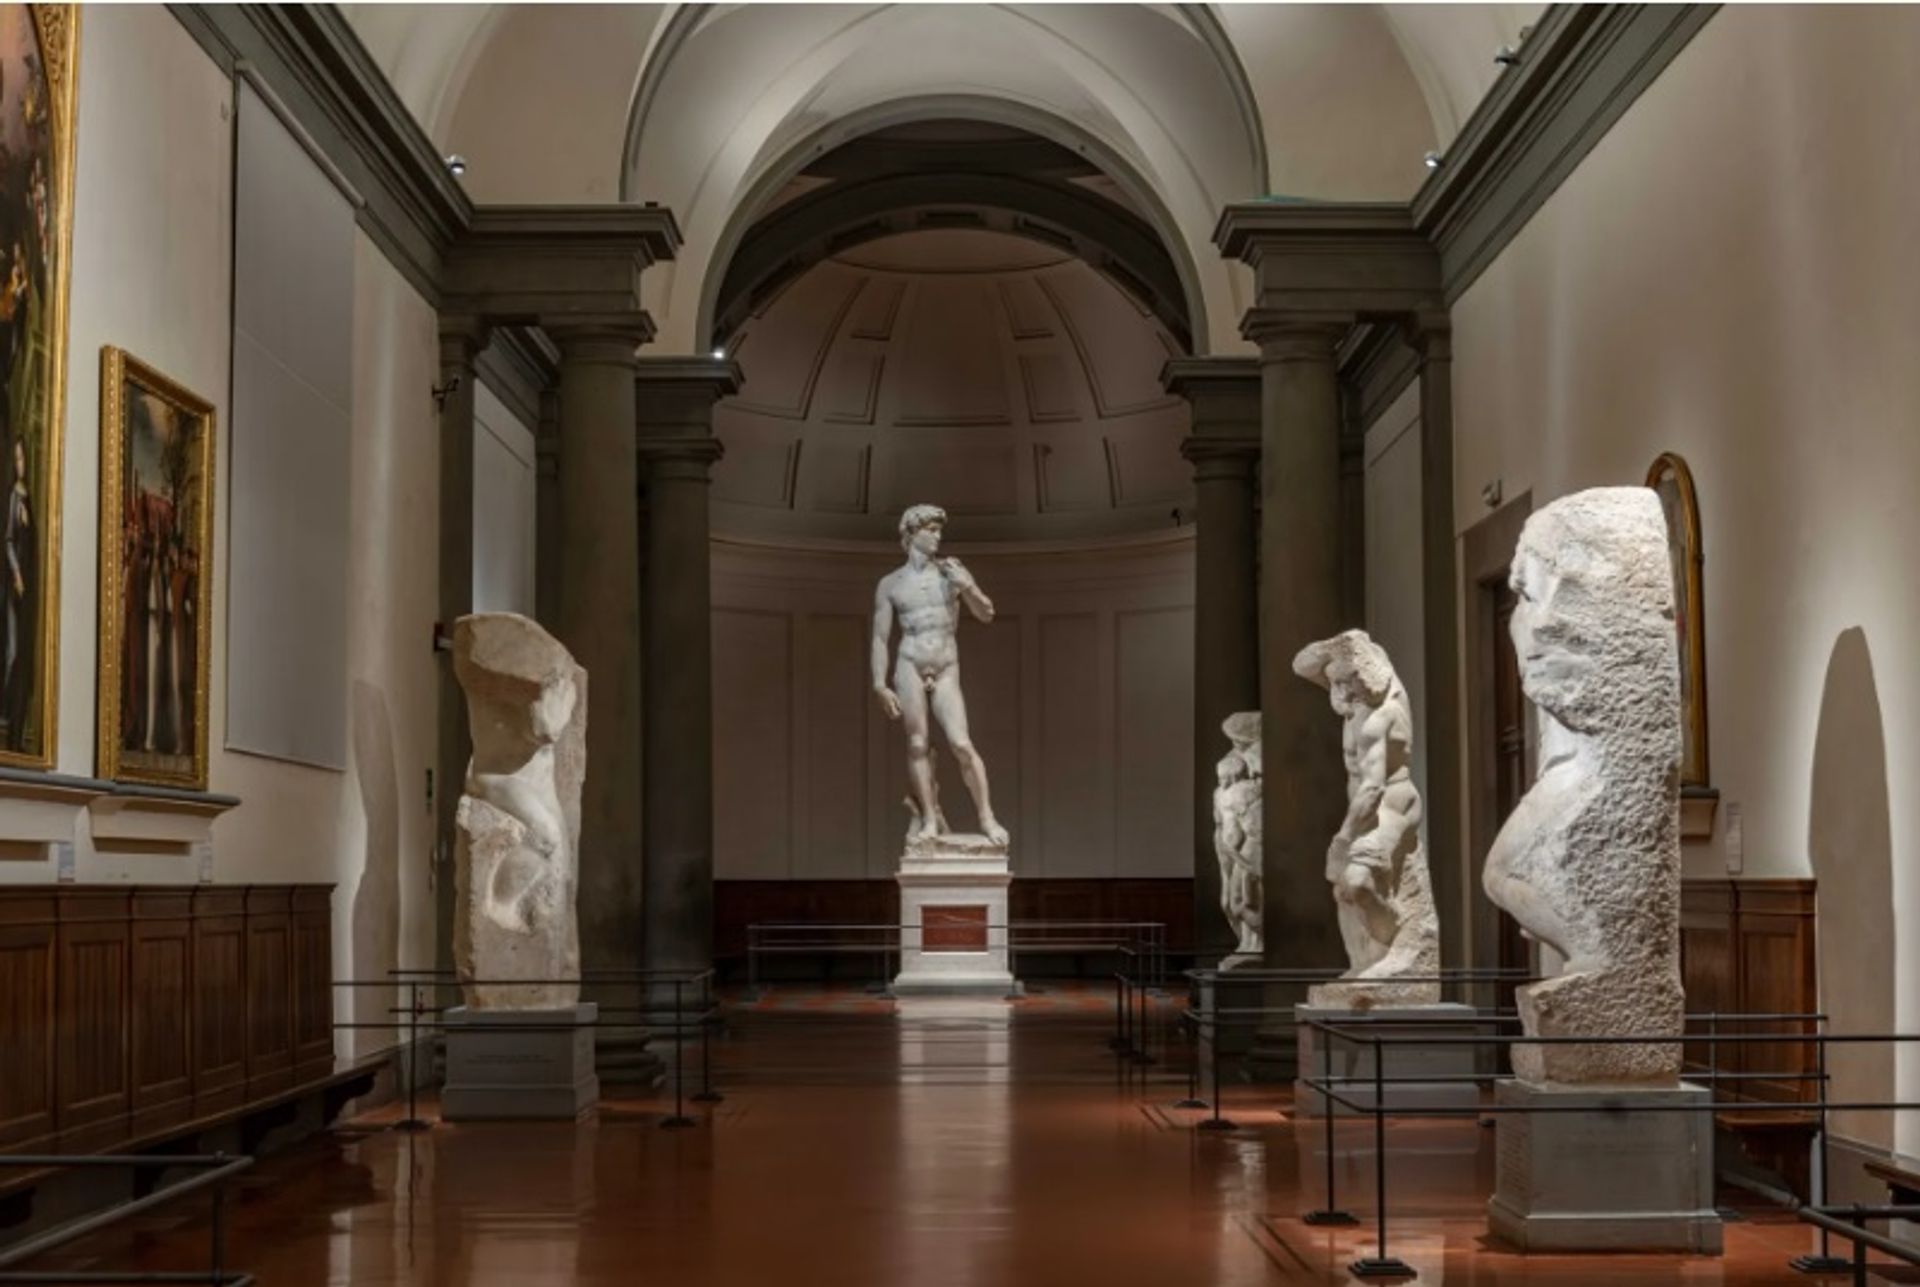 הפסל "דוד" של מיכלאנג'לו קיבל מערכת תאורה חדשה כחלק משיפוץ בן שנתיים במוזיאון "גלריה דל'אקדמיה" בפירנצה

צילום: Guido Cozzi


